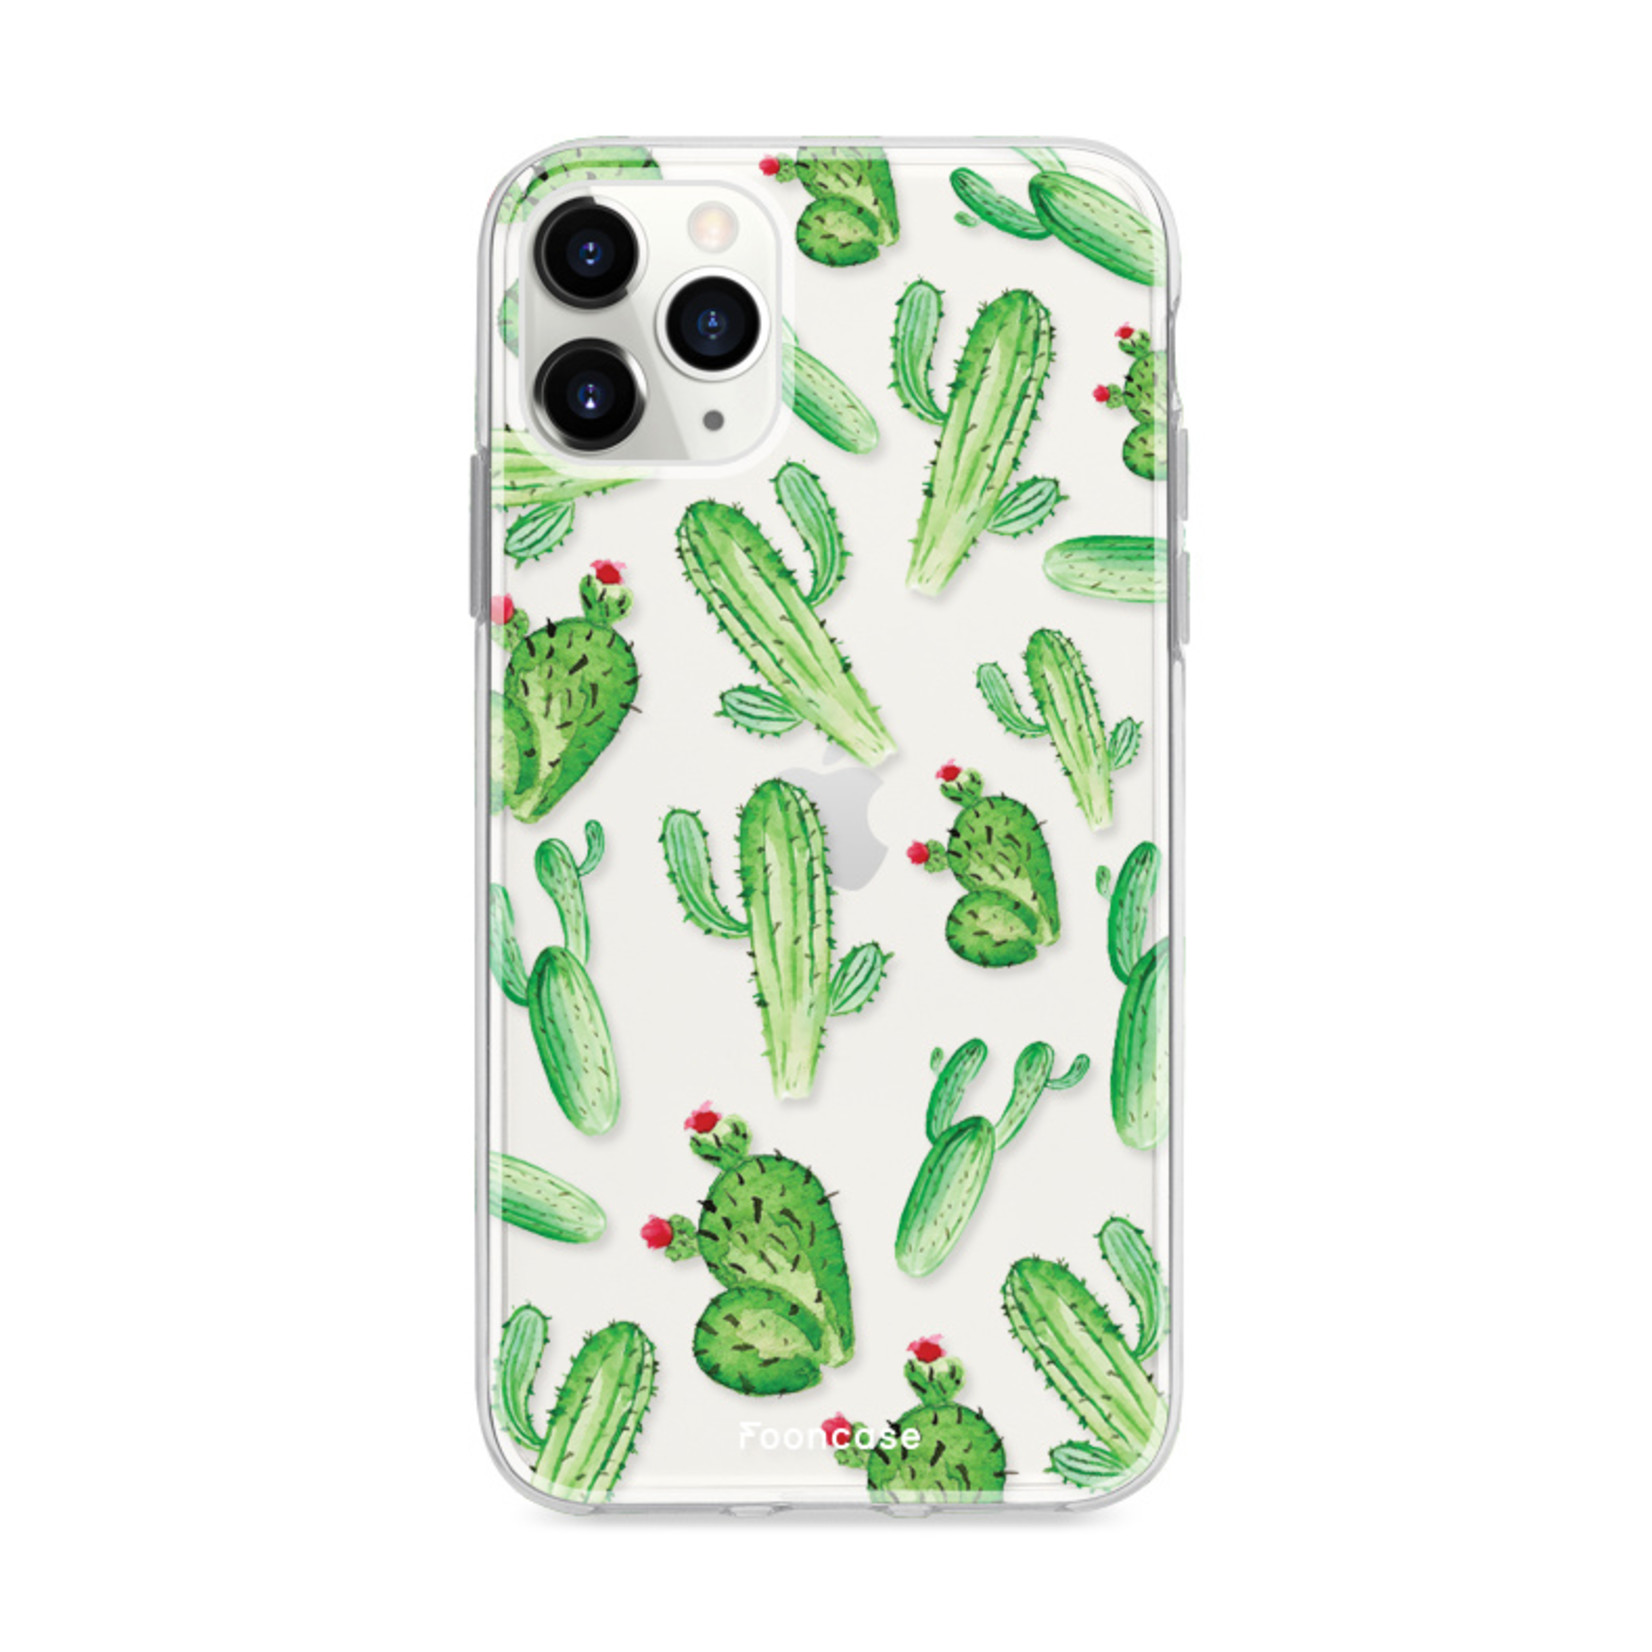 FOONCASE IPhone 11 Pro Max Cover - Cactus